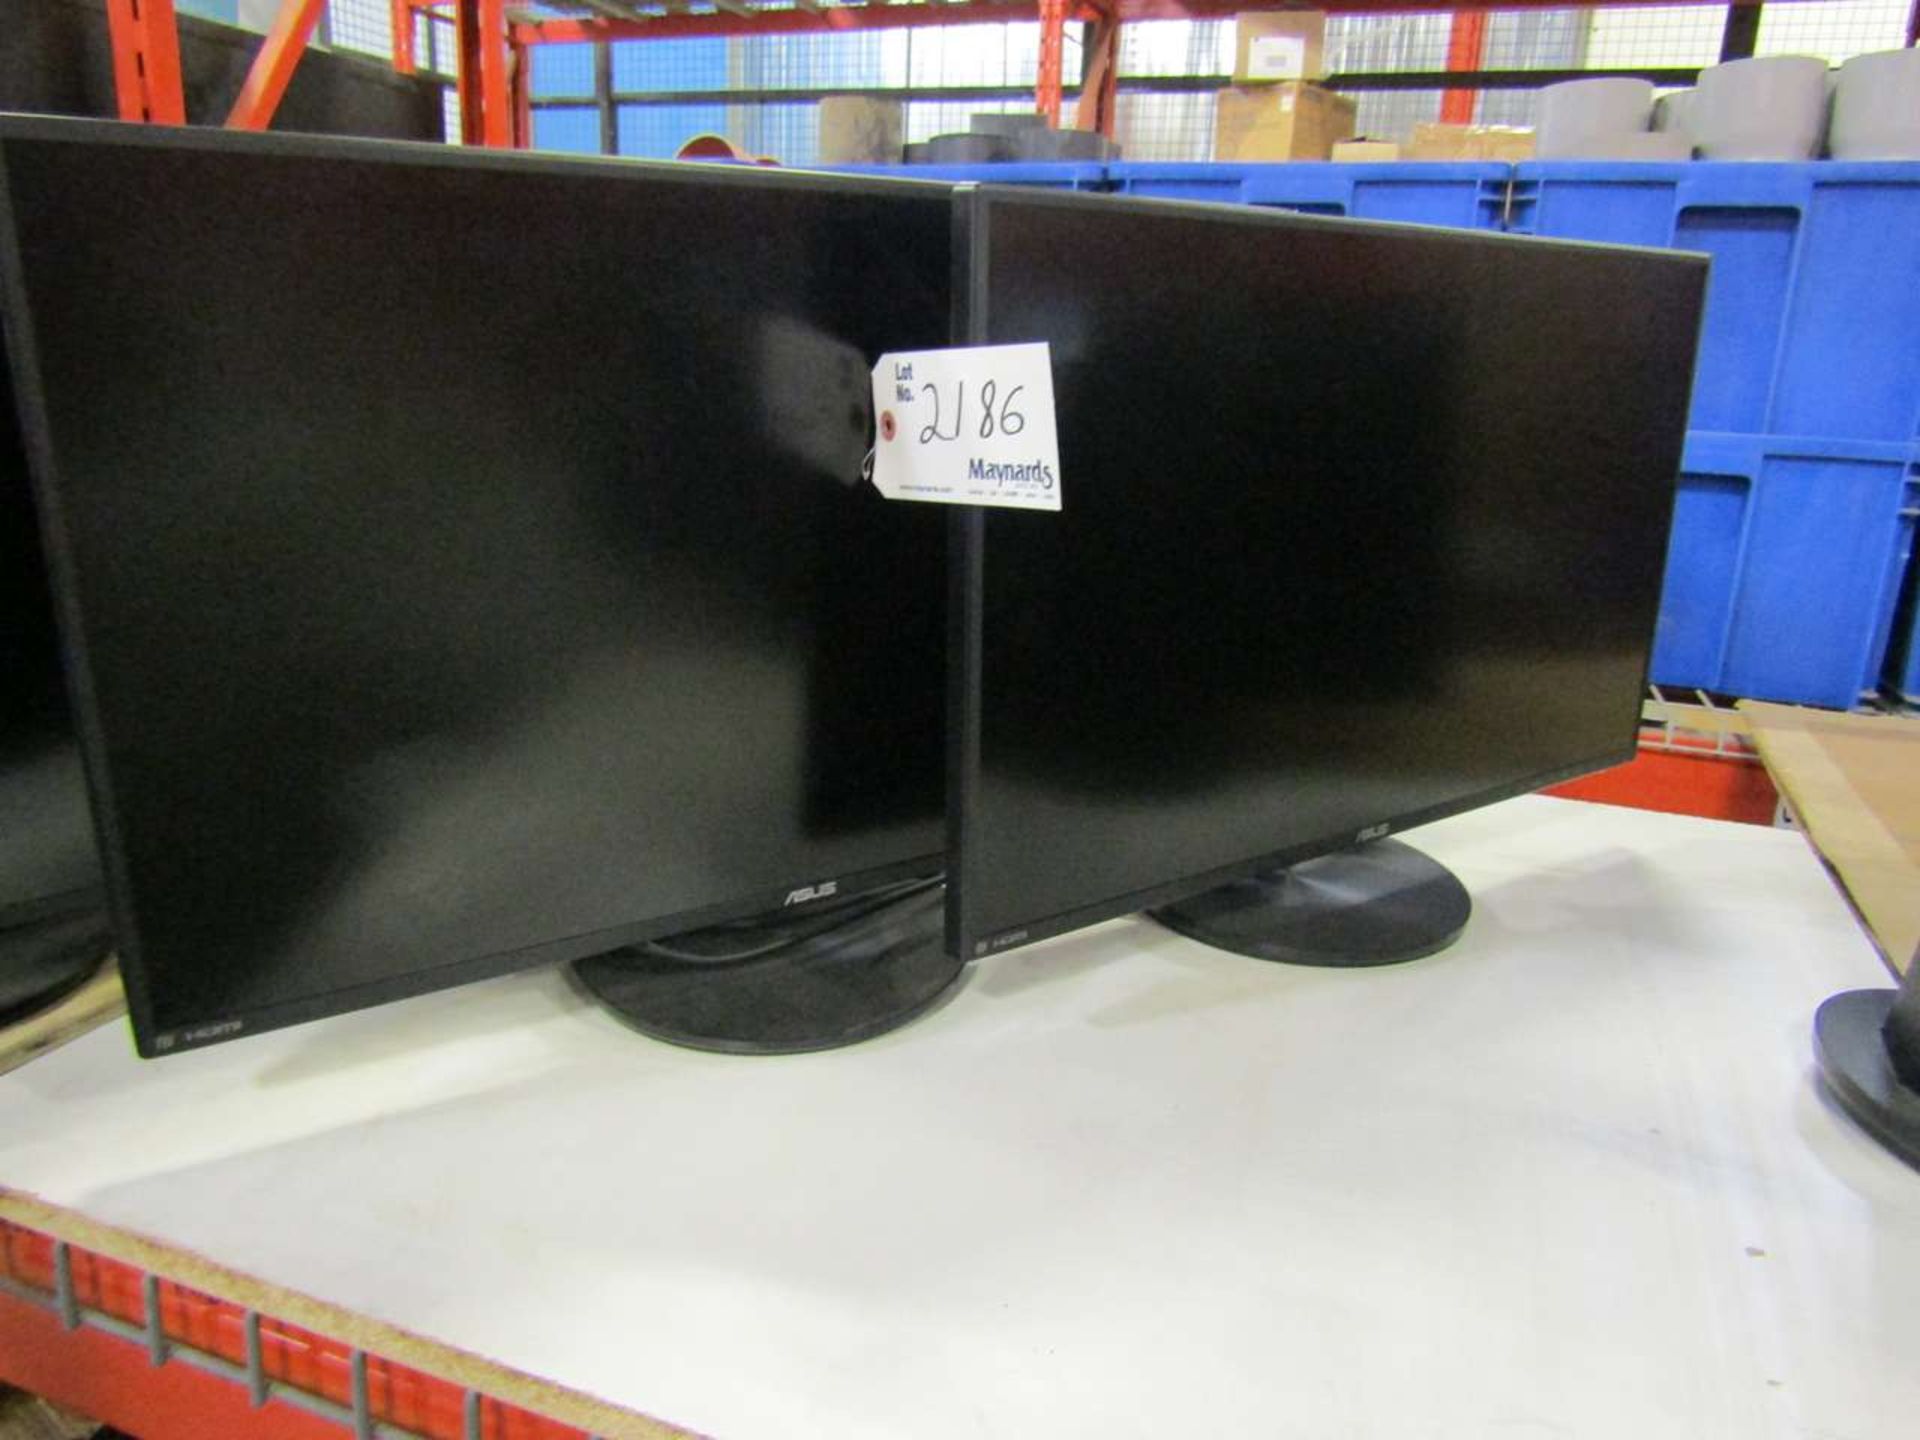 Asus 27" LCD Monitors